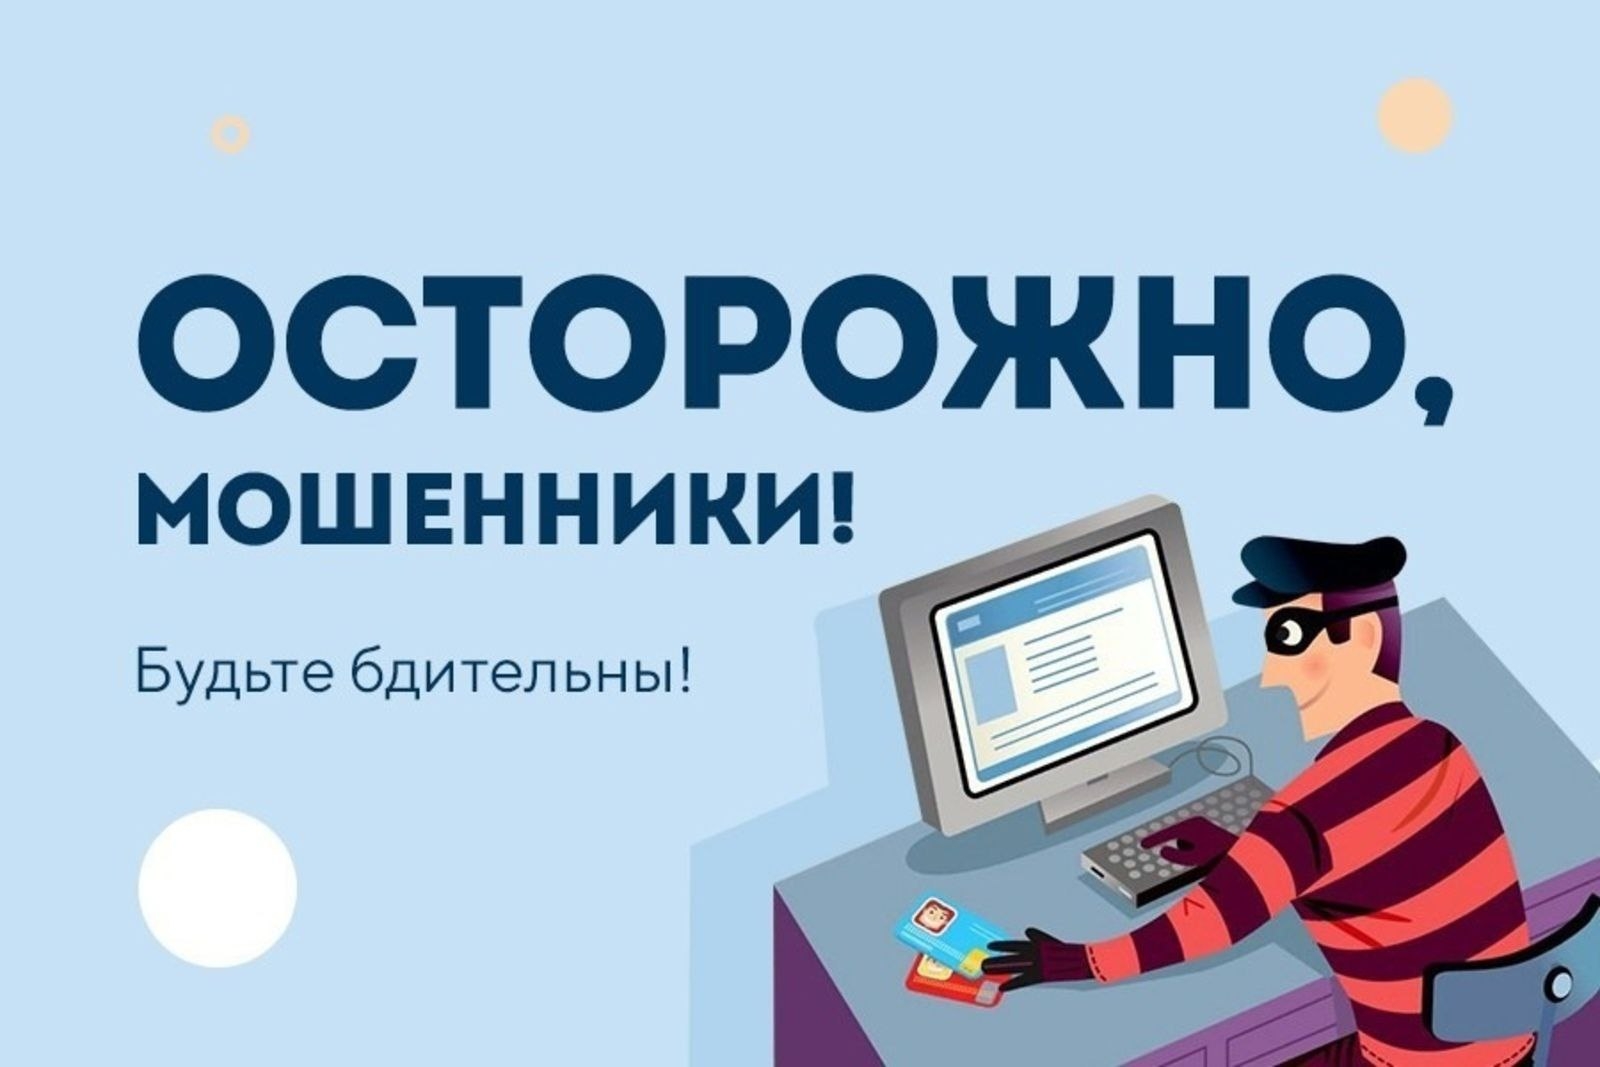 Более 6 миллионов рублей жители Калмыкии перевели мошенникам за прошедшую неделю